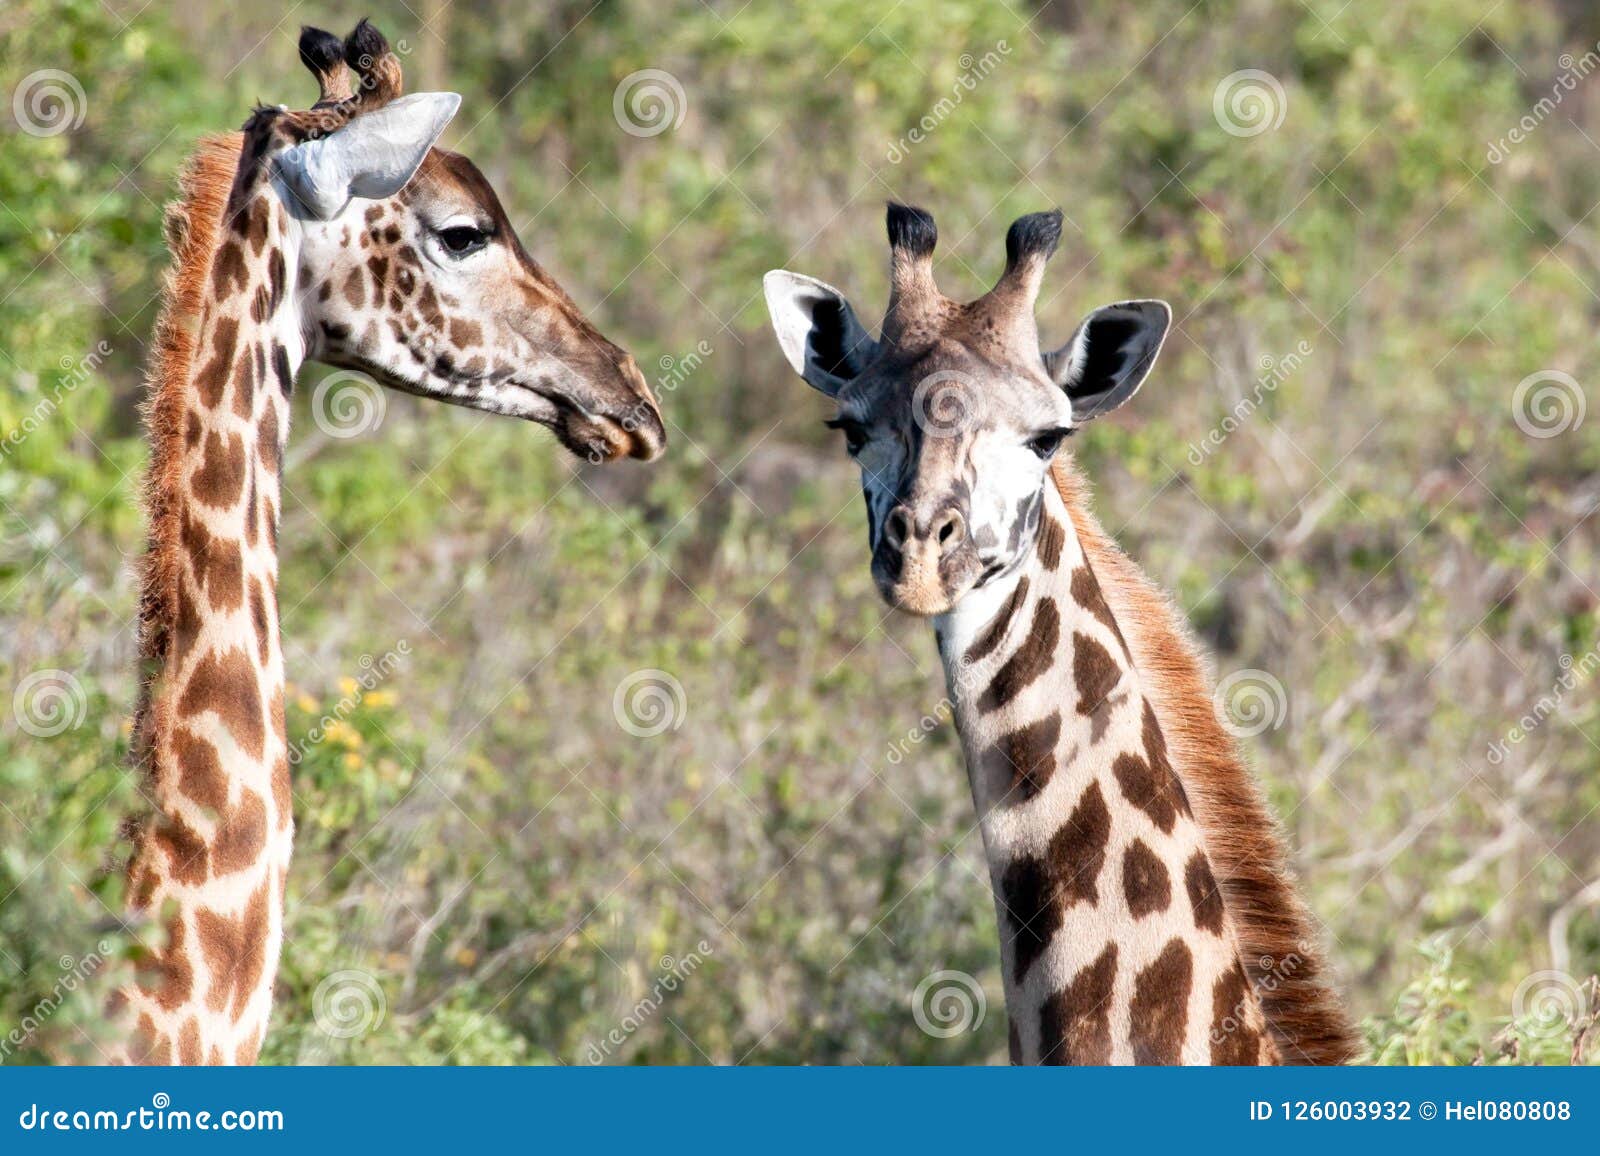 Two Young Giraffes, Cute Giraffe Calfes in Tanzania, Africa Stock Photo -  Image of facing, long: 126003932